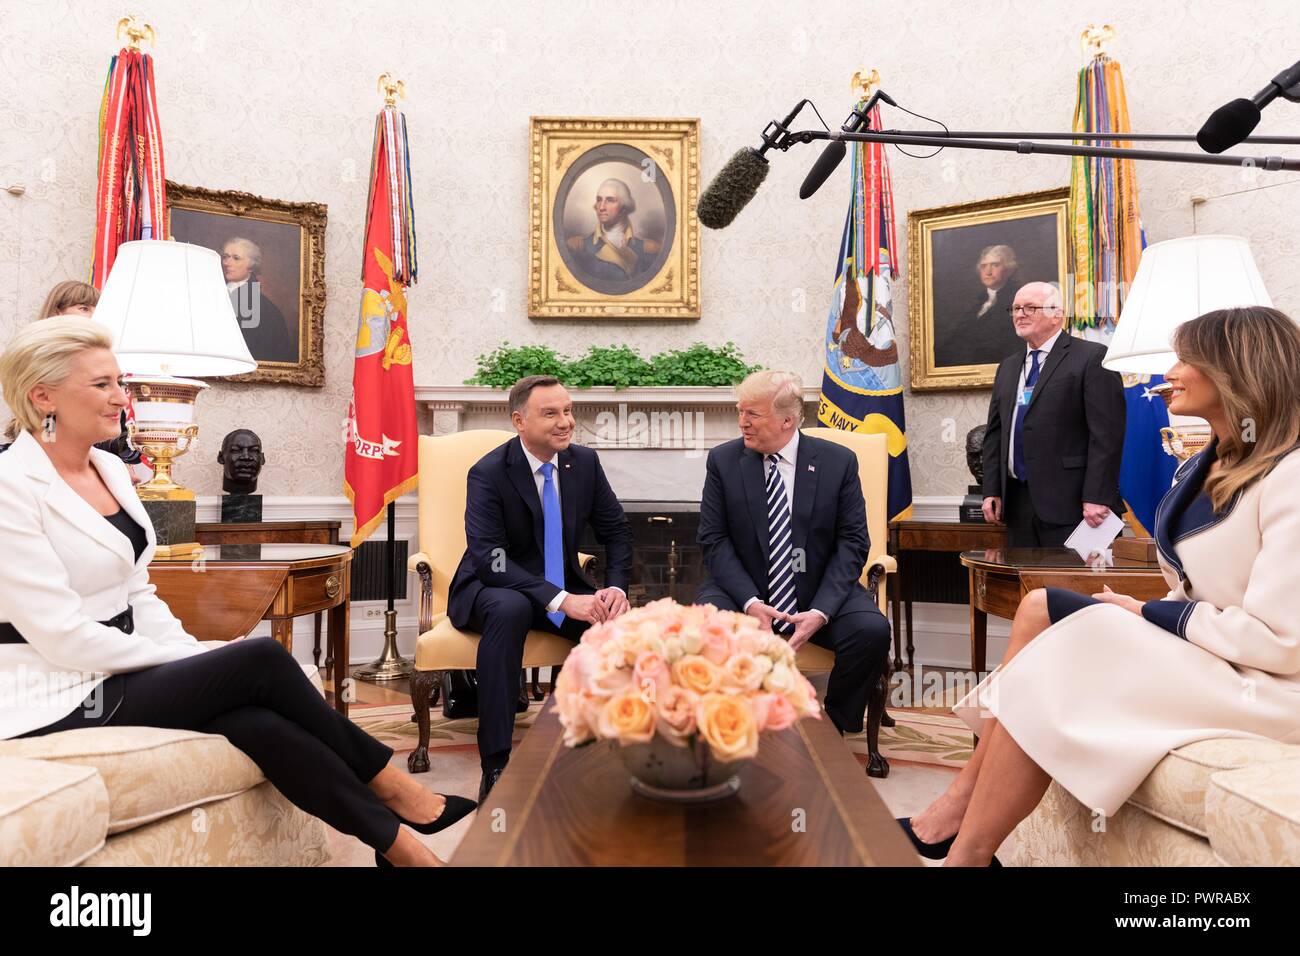 Président américain Donald Trump s'entretient avec le président polonais Andrzej Duda en tant que première dame Melania Trump, droite, et Agata, Kornhauser-Duda à gauche, dans le cours d'une réunion bilatérale dans le bureau ovale de la Maison Blanche le 18 septembre 2018 à Washington, DC. Banque D'Images